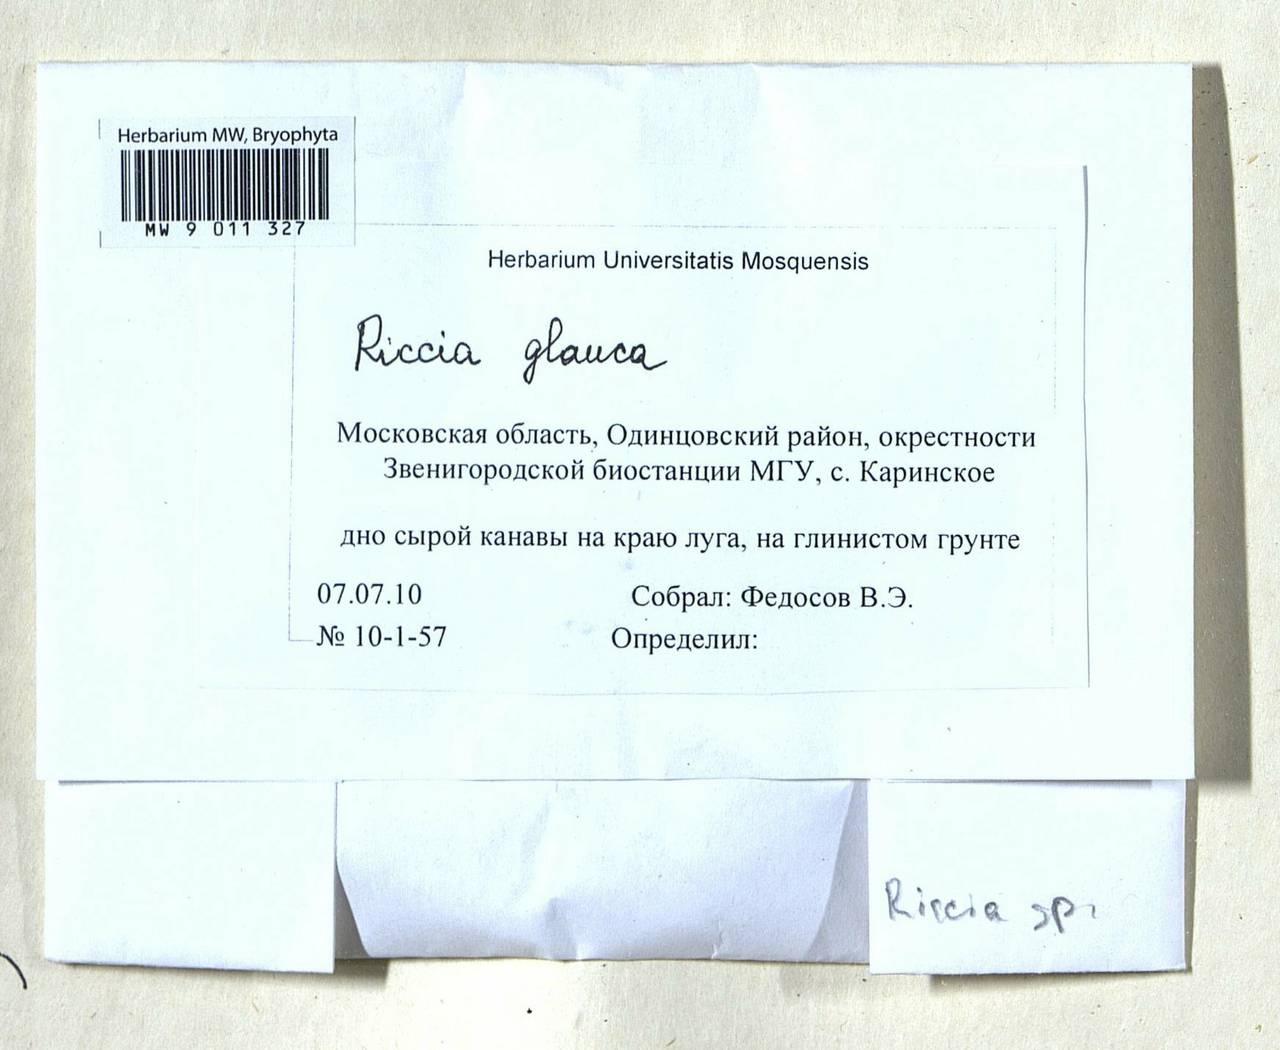 Riccia glauca L., Гербарий мохообразных, Мхи - Москва и Московская область (B6a) (Россия)